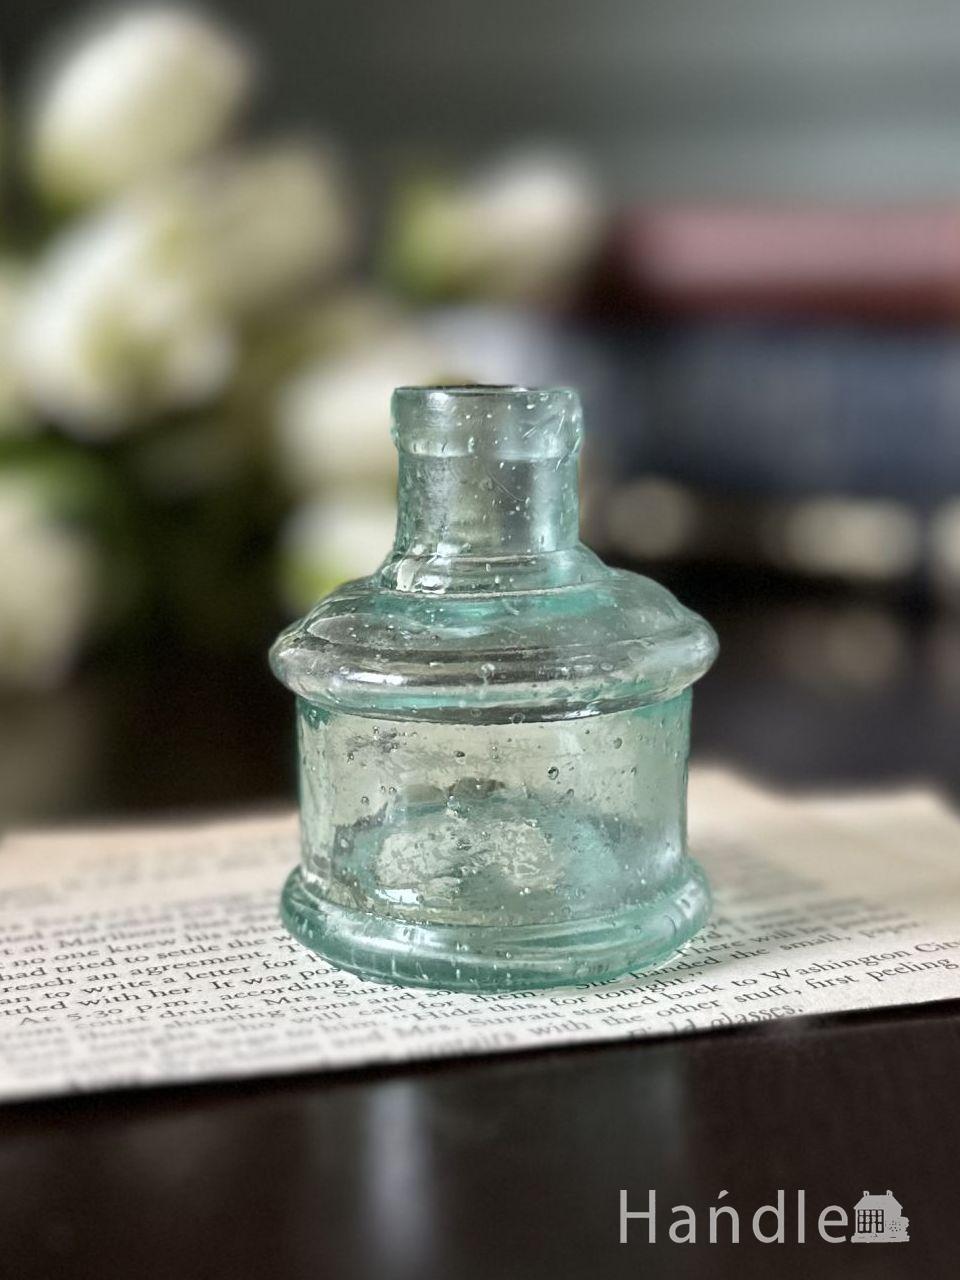 アンティークガラスのおしゃれな雑貨、丸い形のヴィクトリアンインク瓶 (d-1907-z)